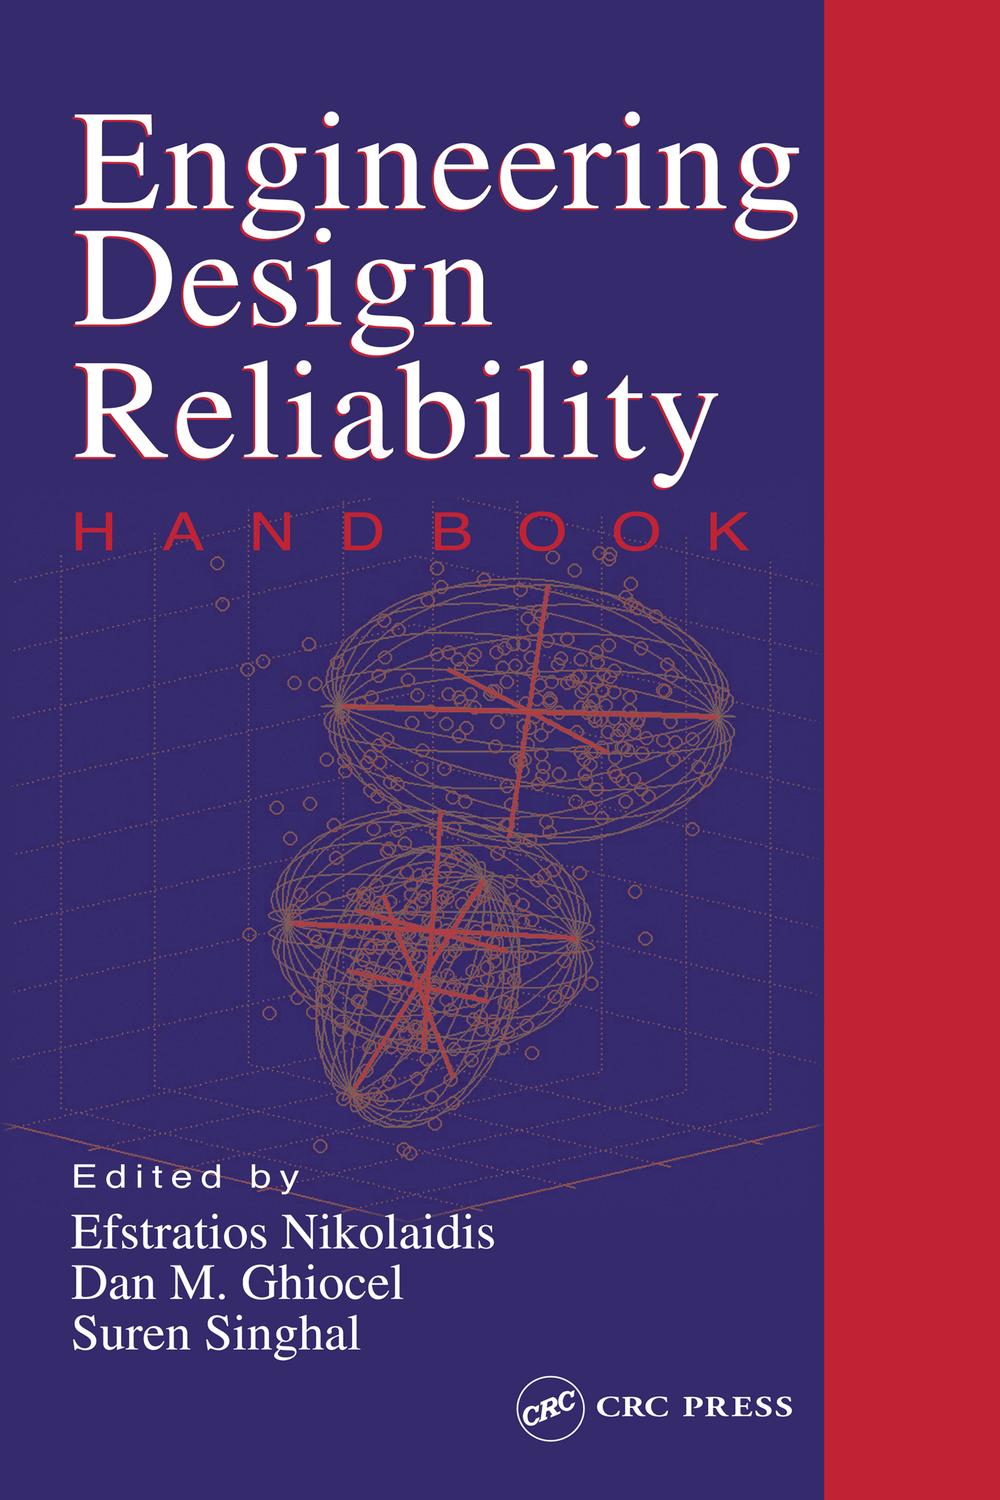 Engineering Design Reliability Handbook - Efstratios Nikolaidis, Dan M. Ghiocel, Suren Singhal